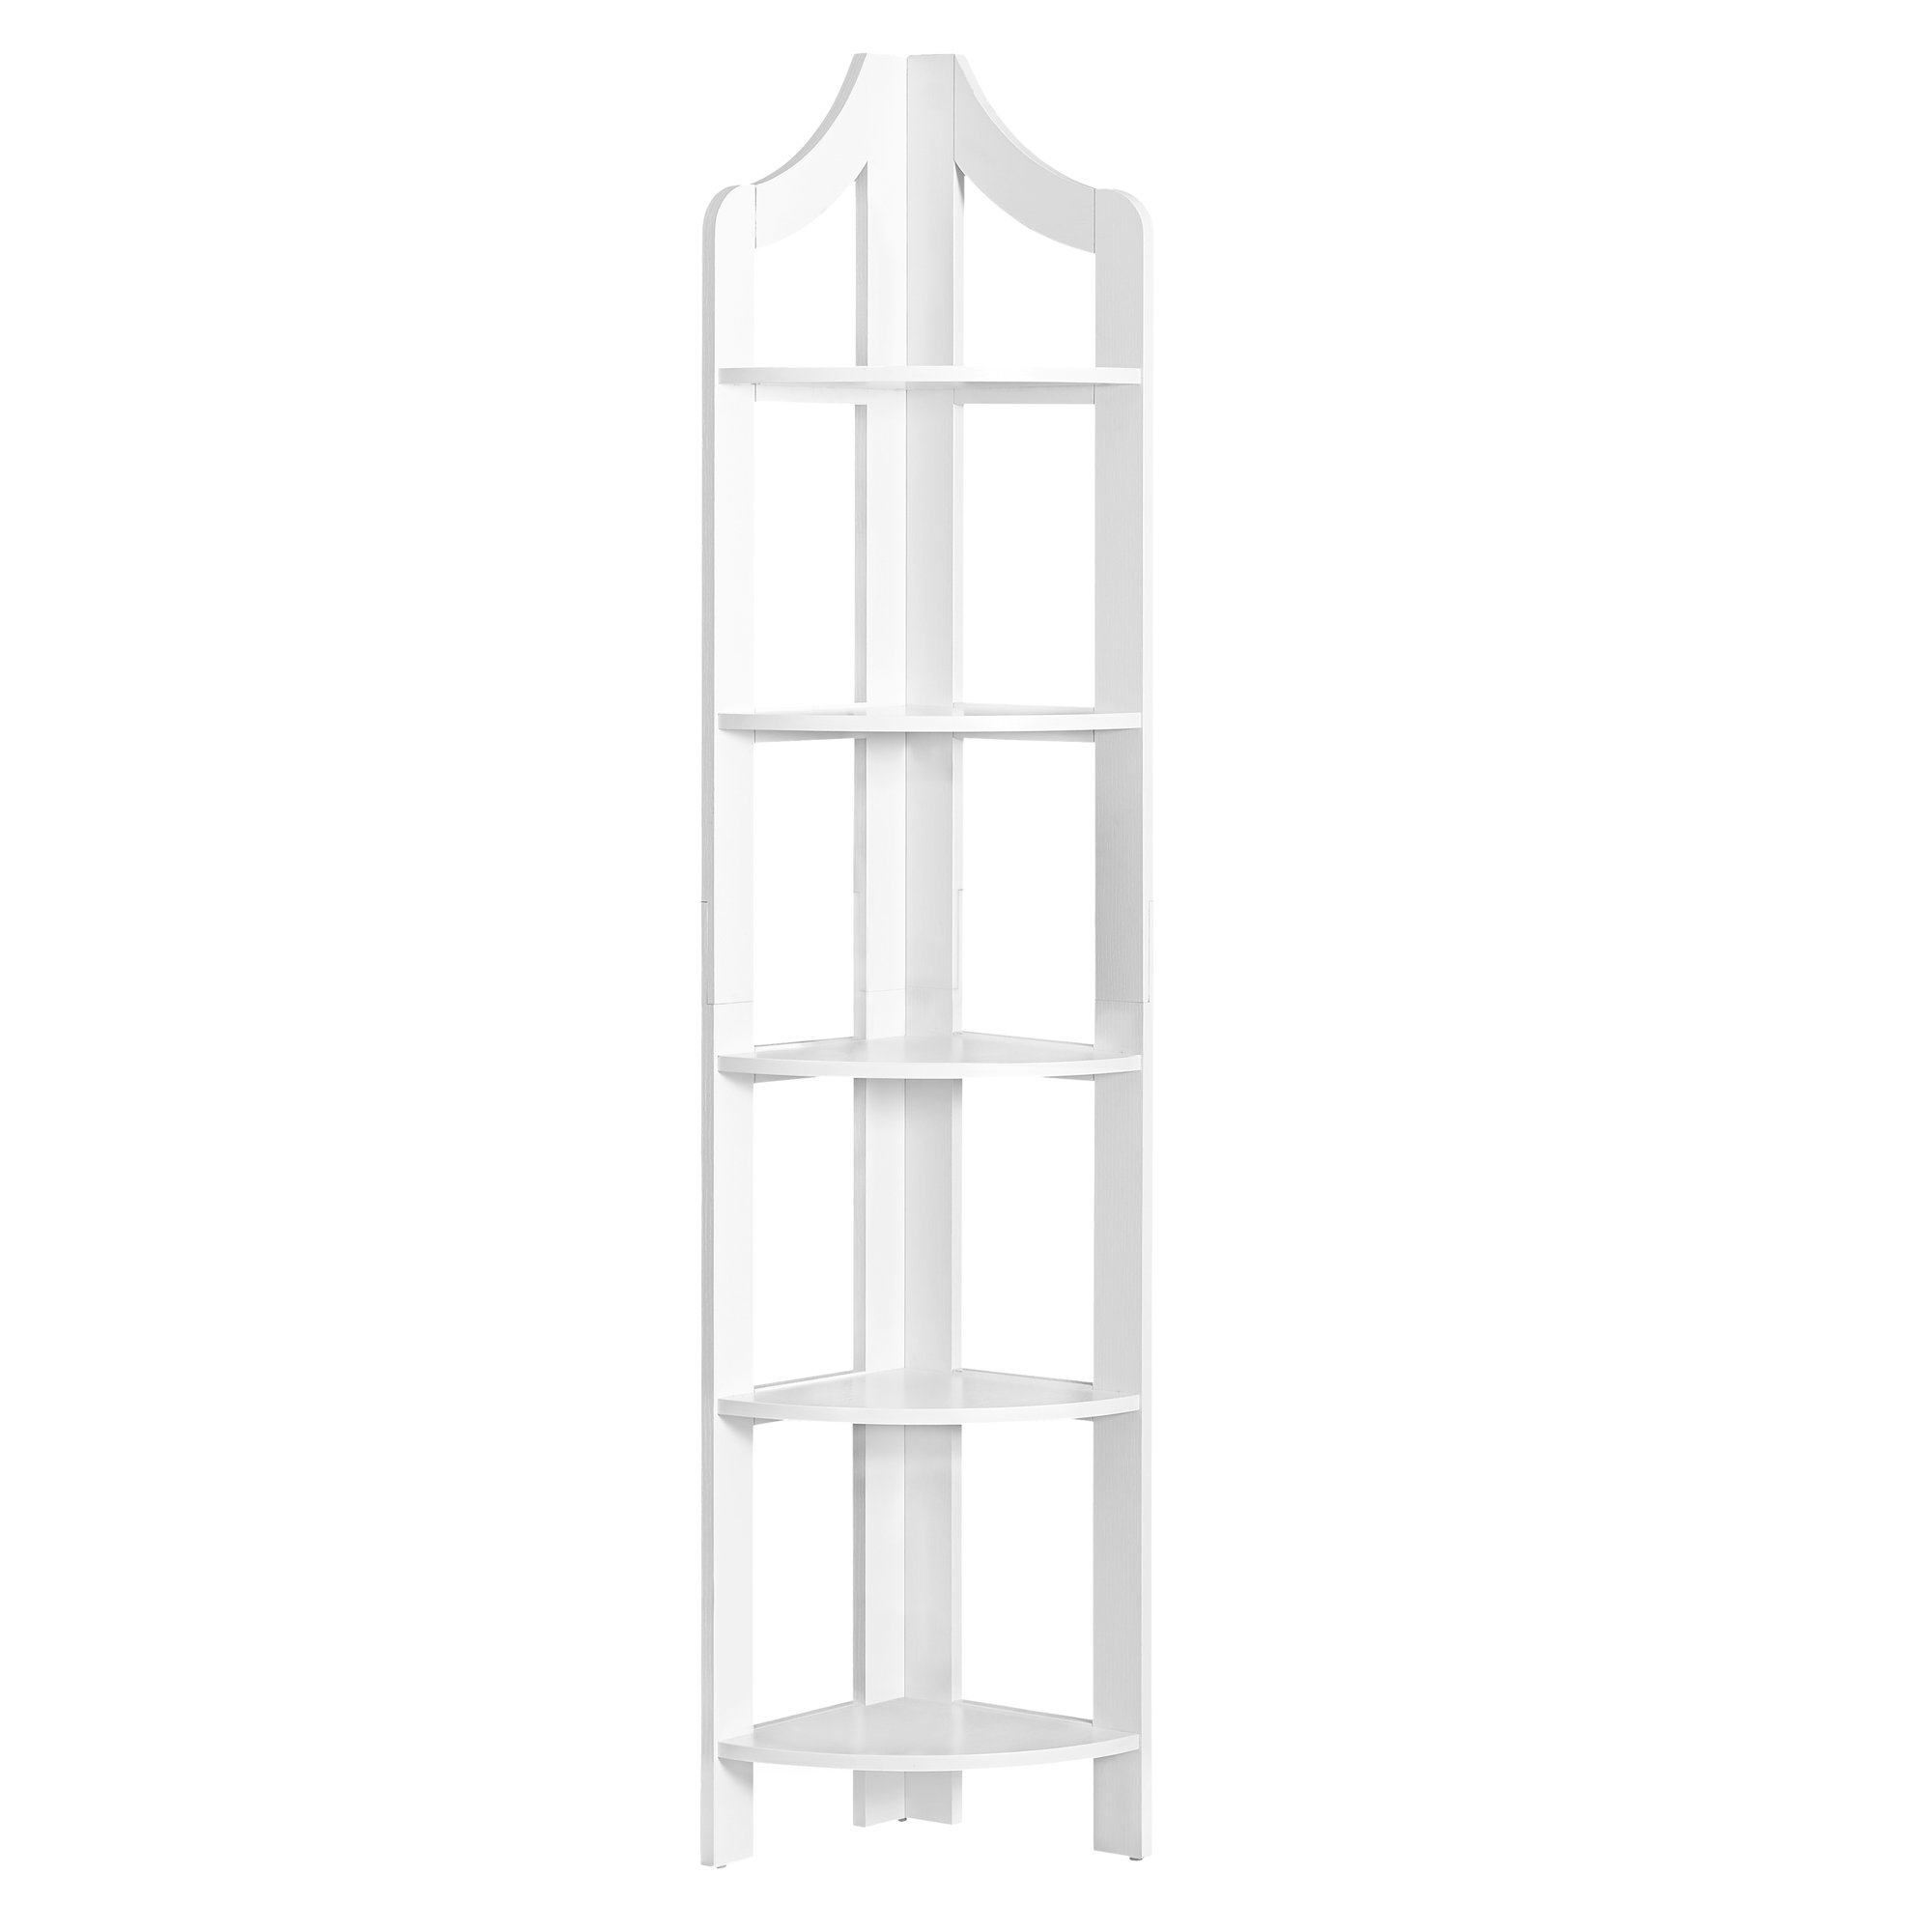 12.25" x 17.5" x 71" White Particle Board Corner Accent Shelf Bookcase